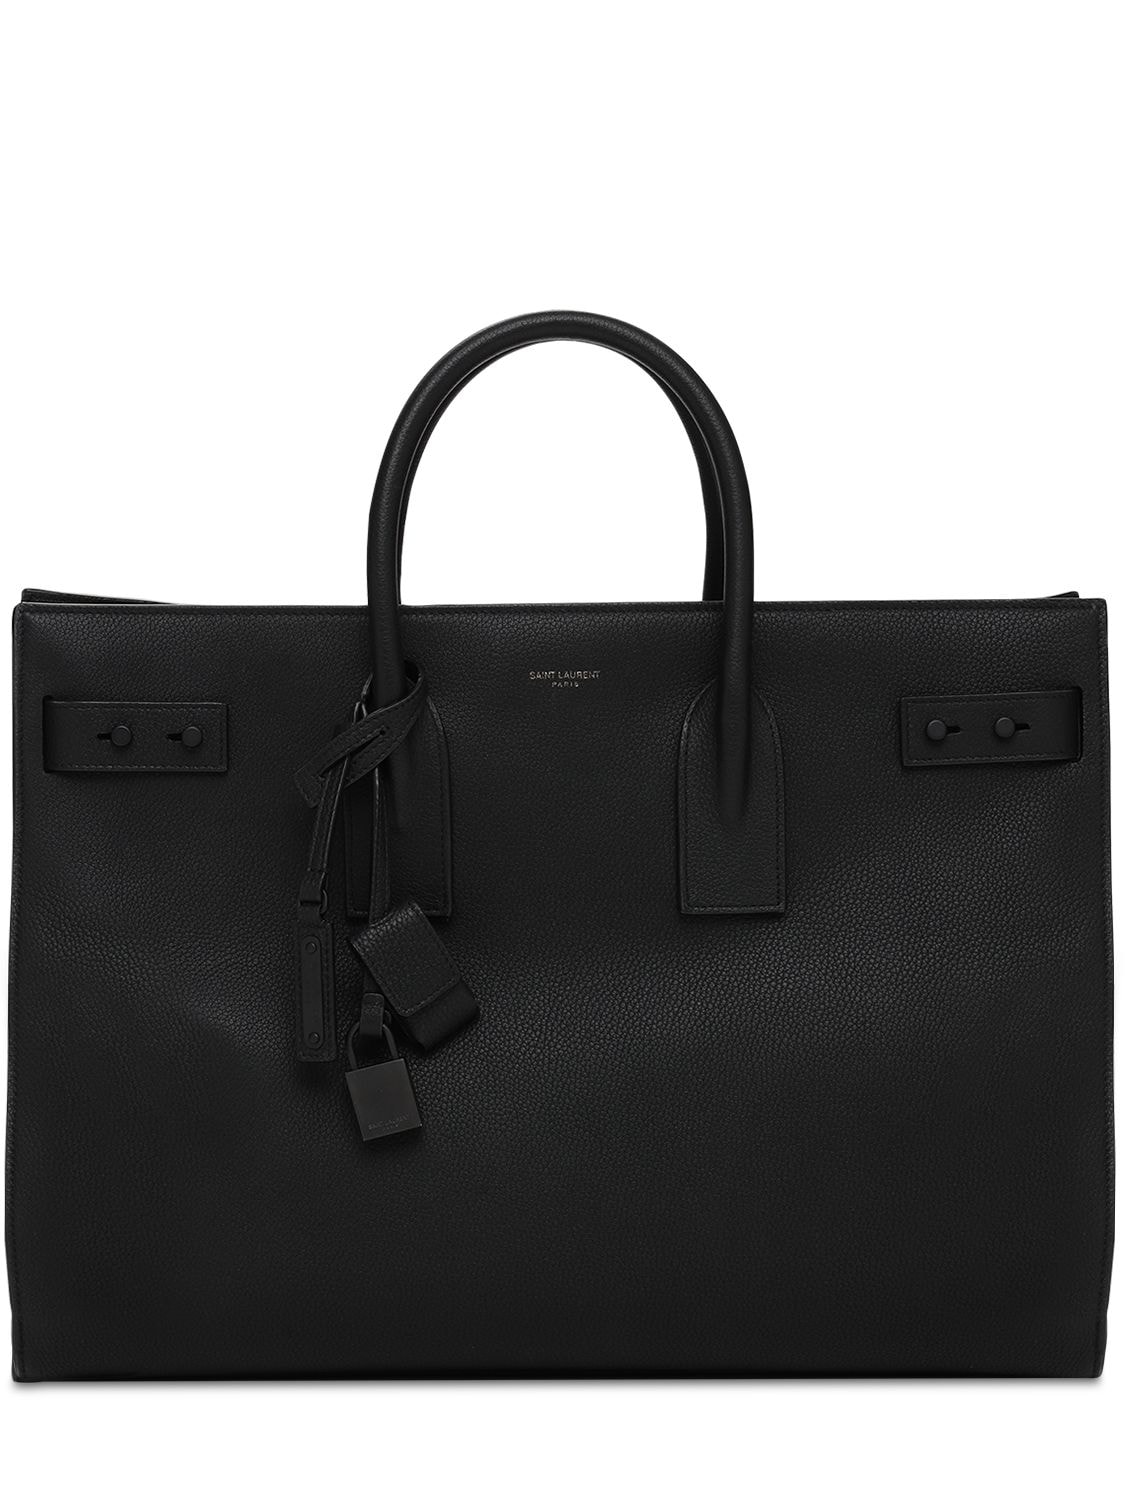 Saint Laurent Sac de Jour Souple Bag Leather Medium Black 2408962